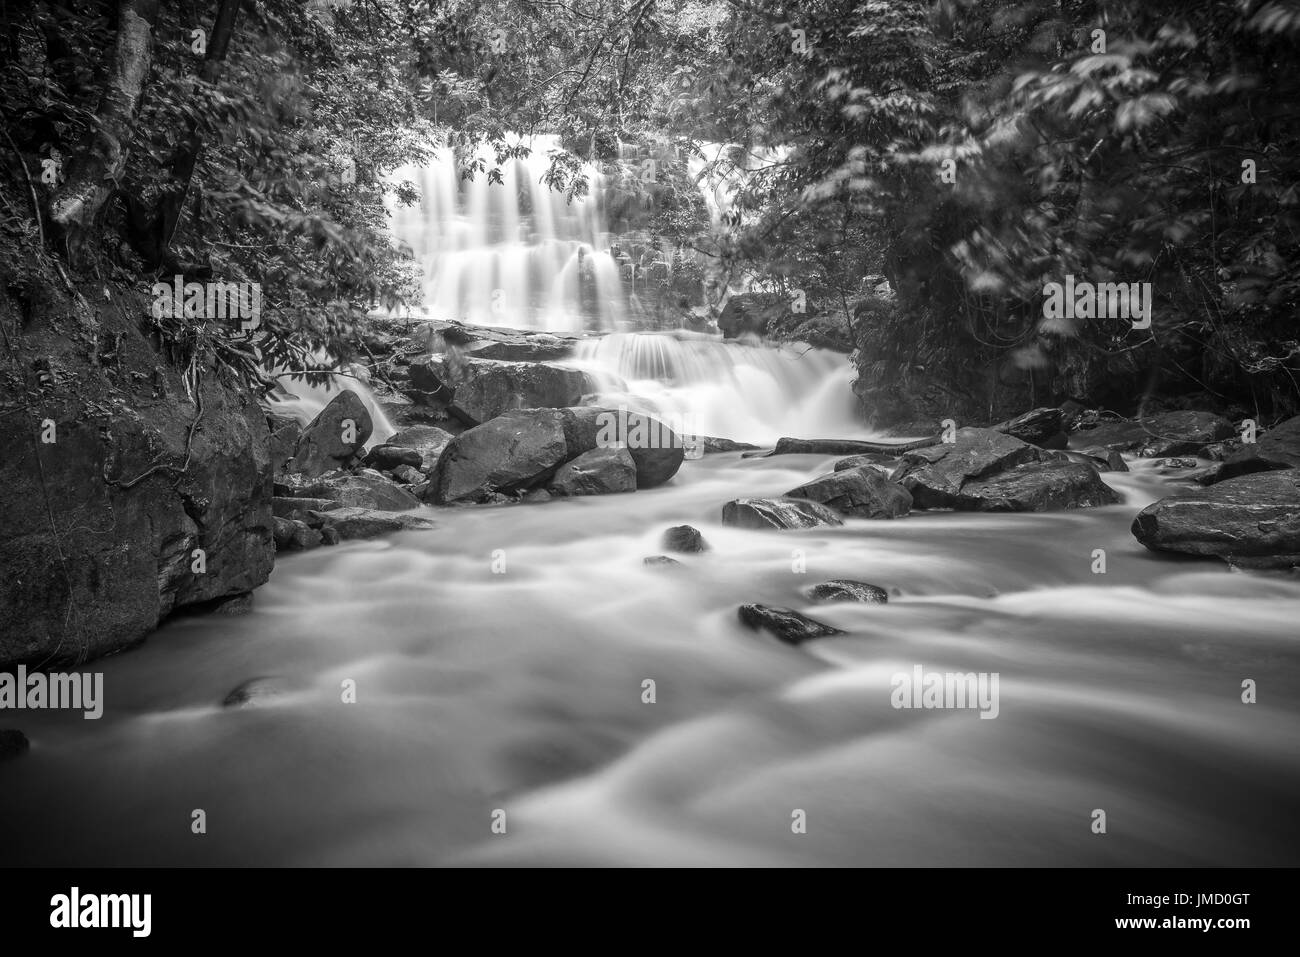 Fotografía en blanco y negro de selva, cascadas y paisajes ribereños tomadas en los parques nacionales de Sarawak, Malasia Foto de stock